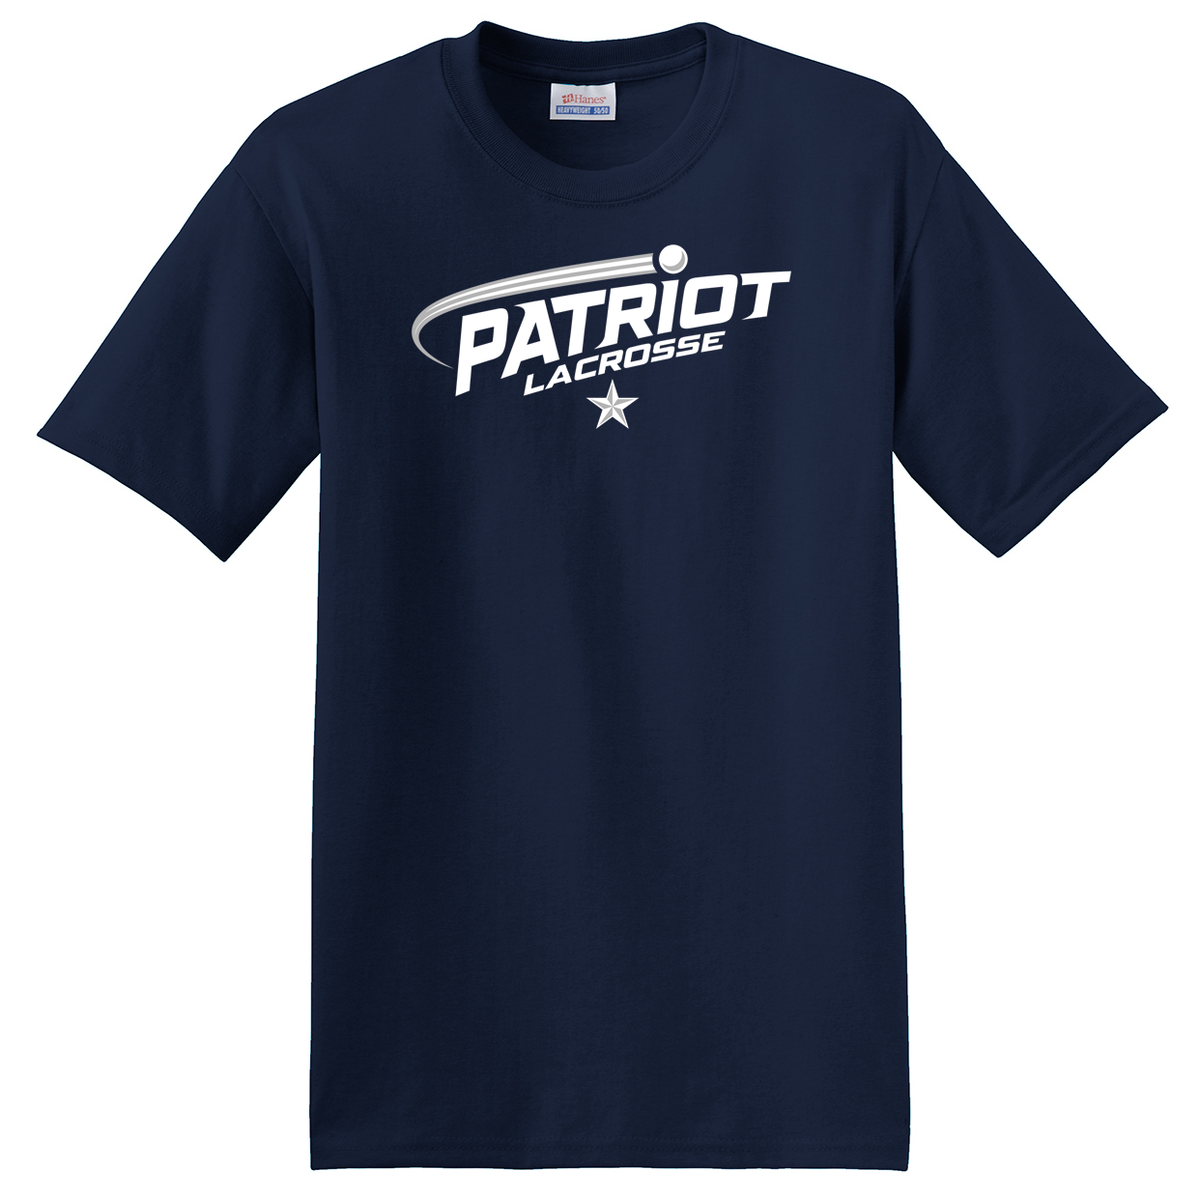 Patriot Lacrosse T-Shirt